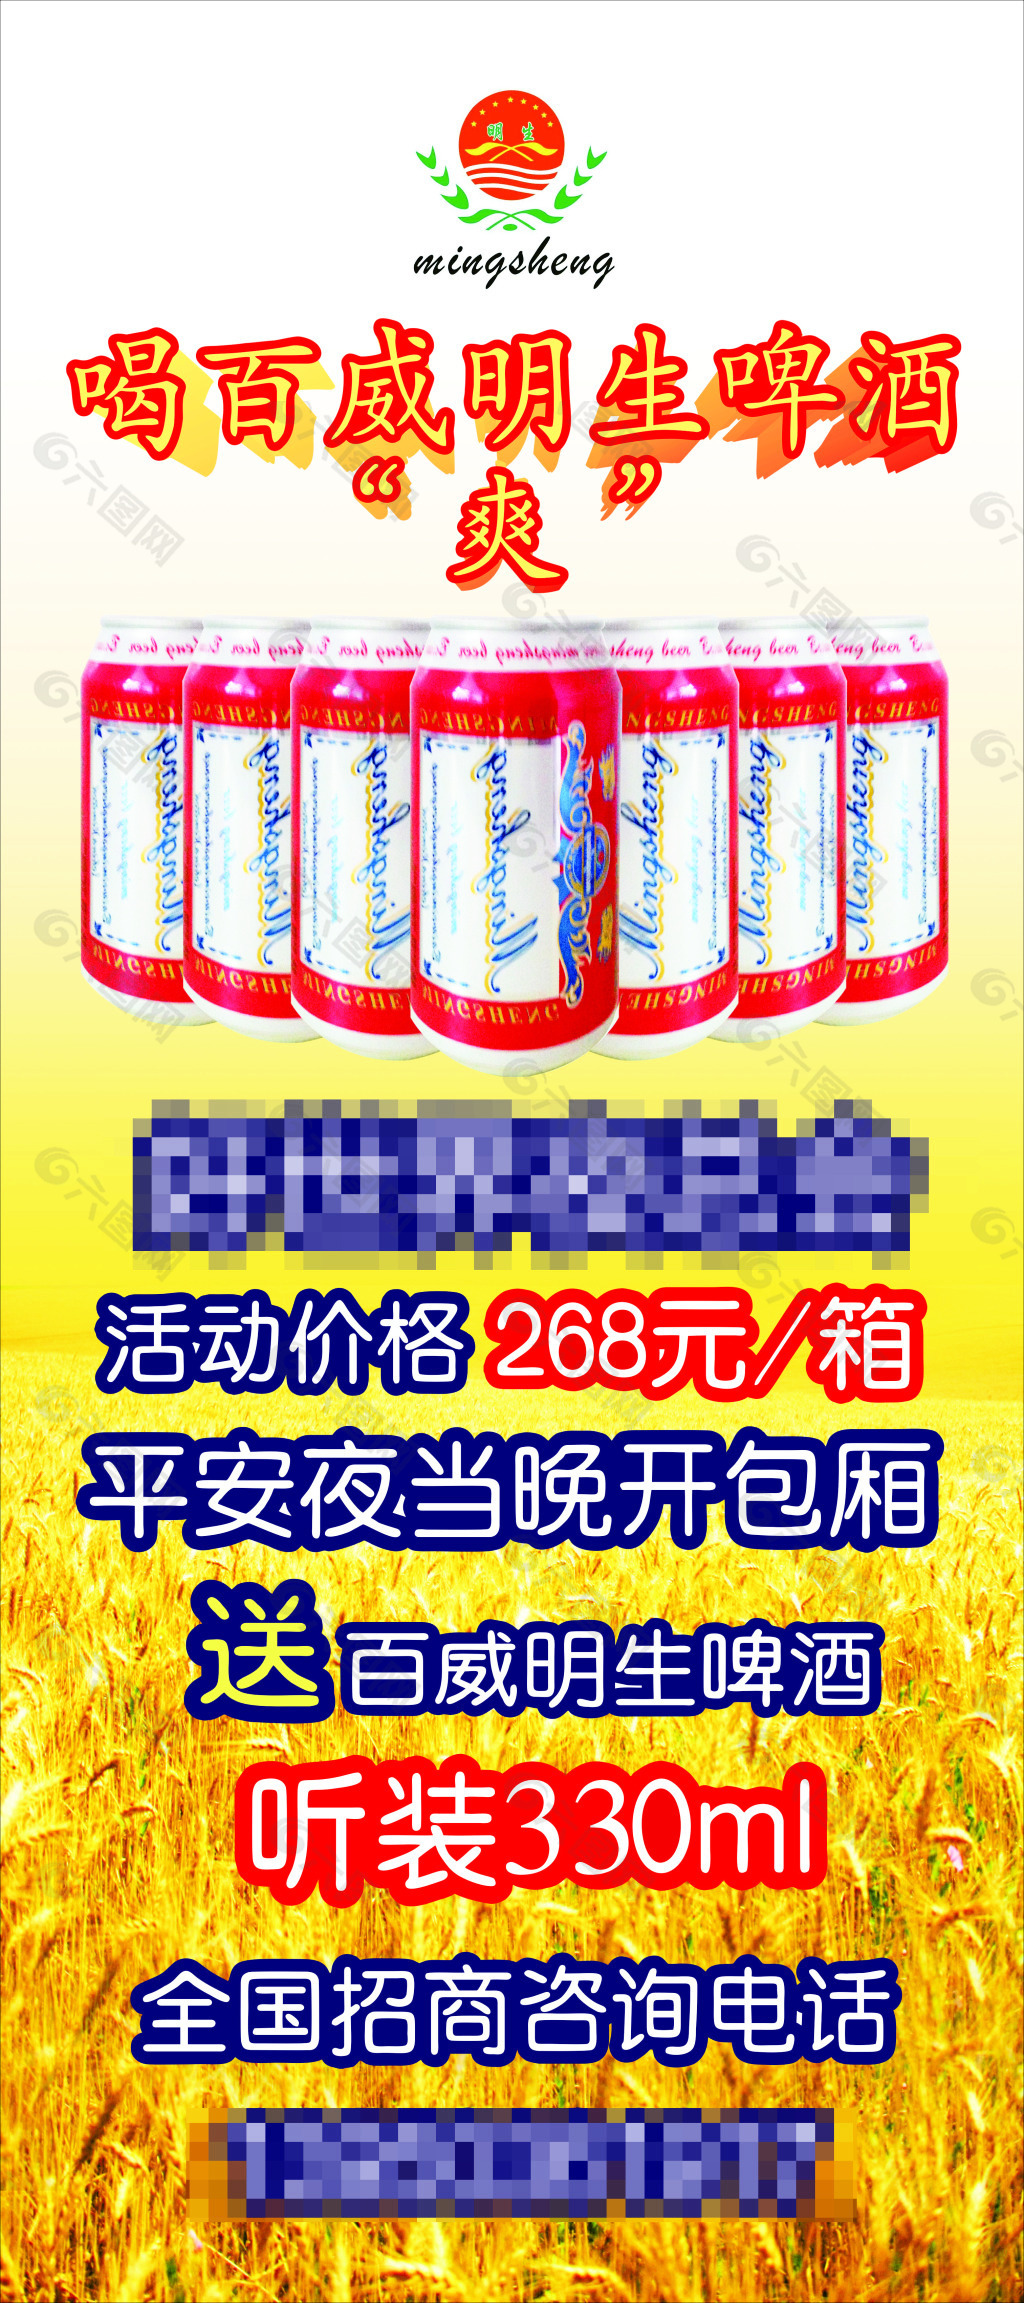 百威明生啤酒 活动展架展板logo